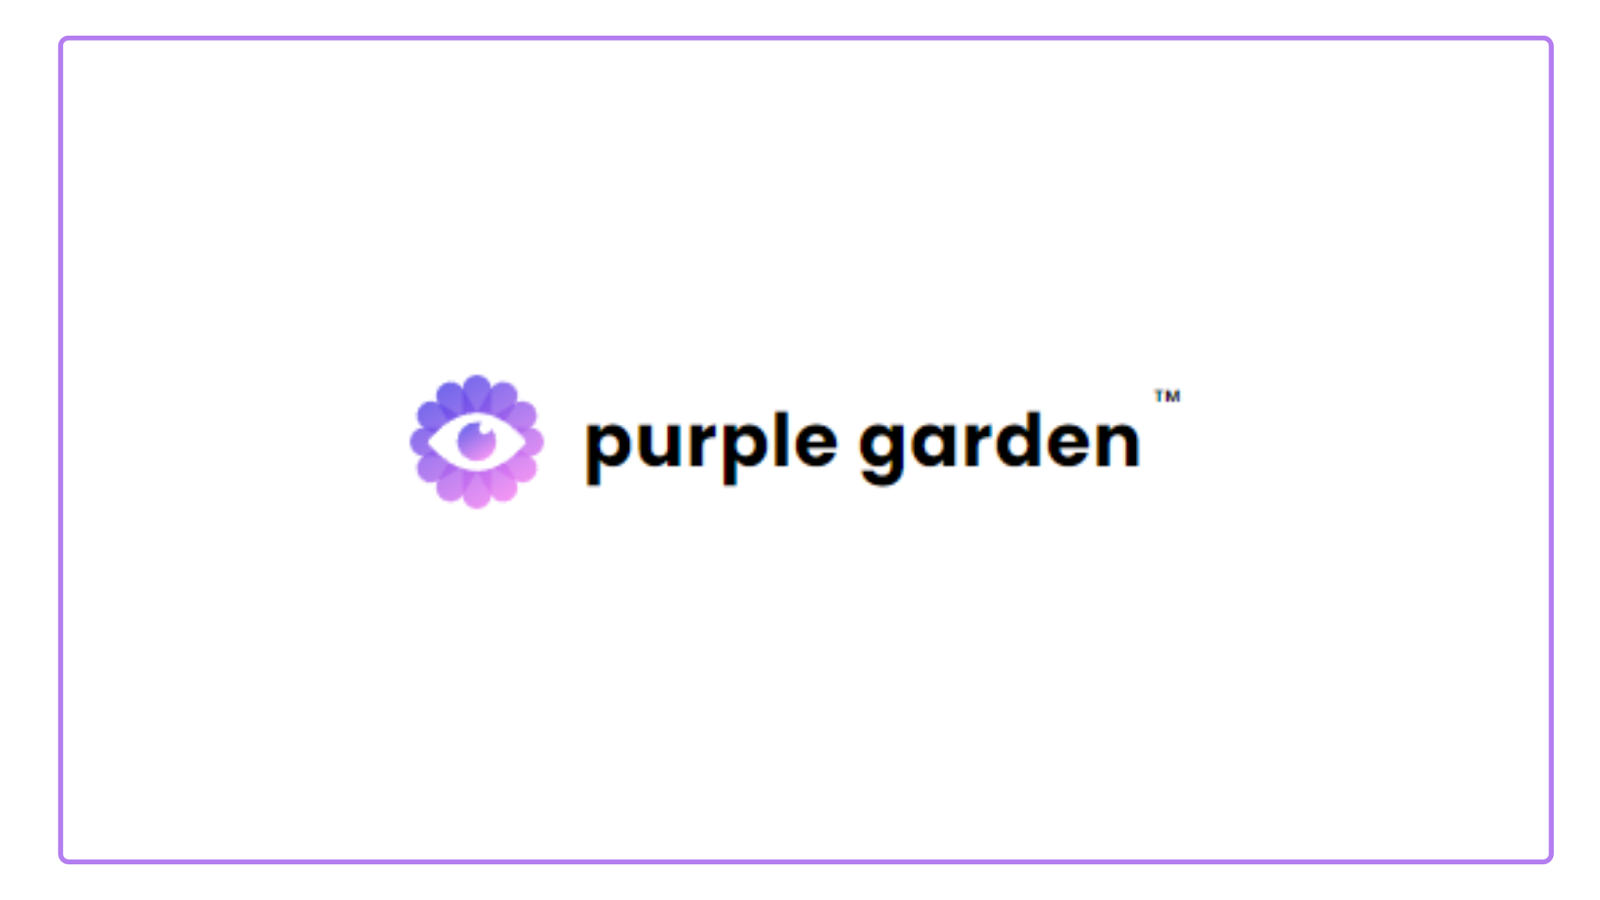 Purple garden logo on white background